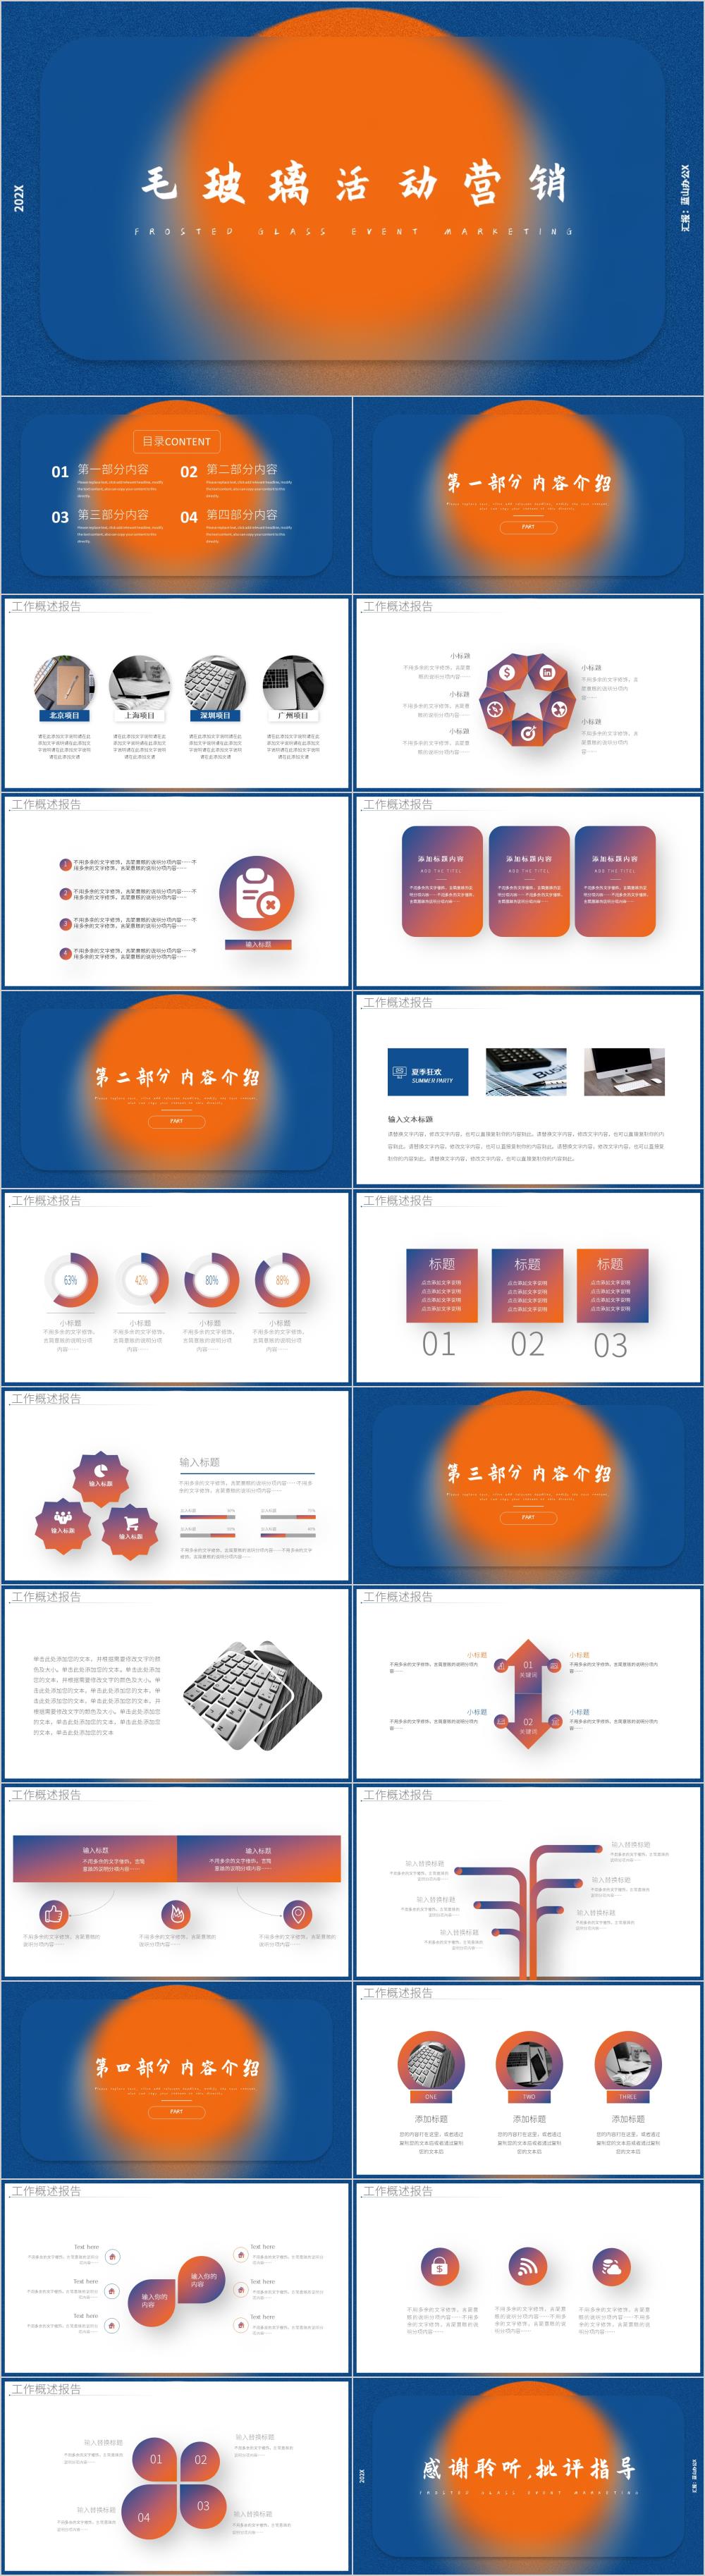 蓝橙色毛玻璃活动营销策划PPT模板